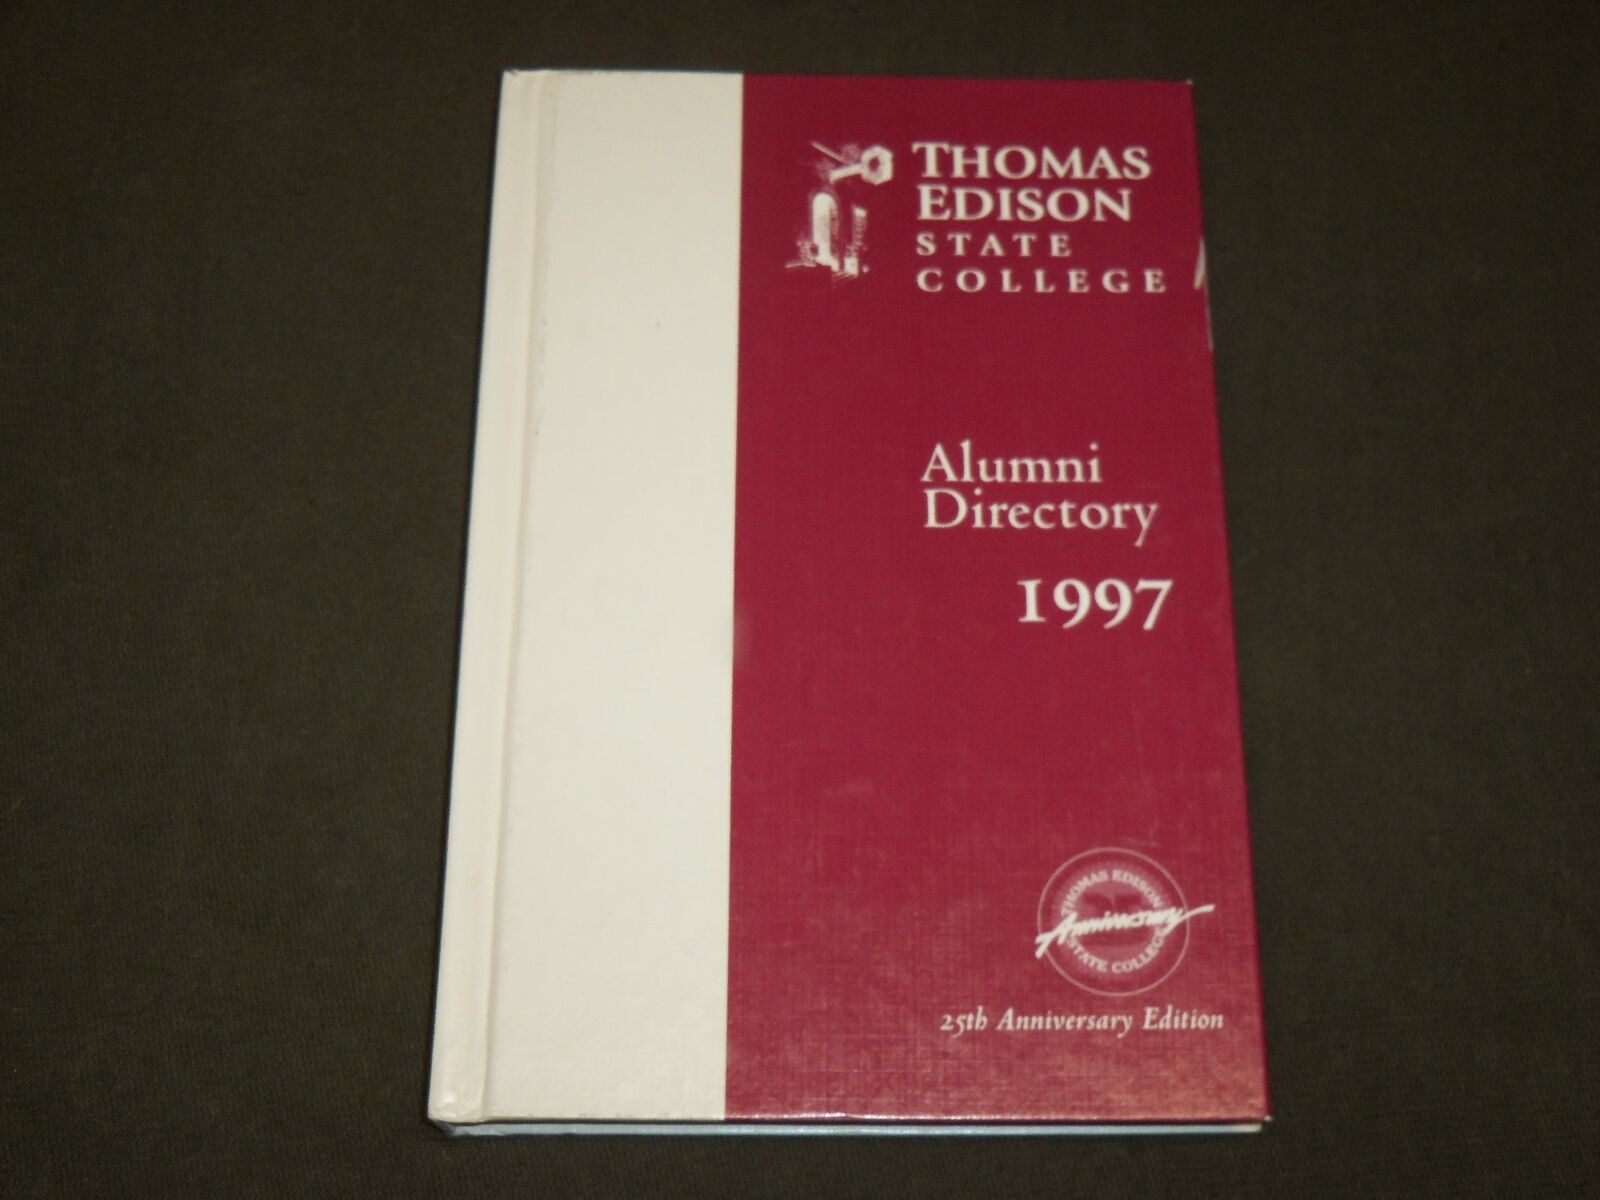 1997 THOMAS EDISON STATE COLLEGE ALUMNI DIRECTORY -25TH ANNIVERSARY EDN- KD 6234